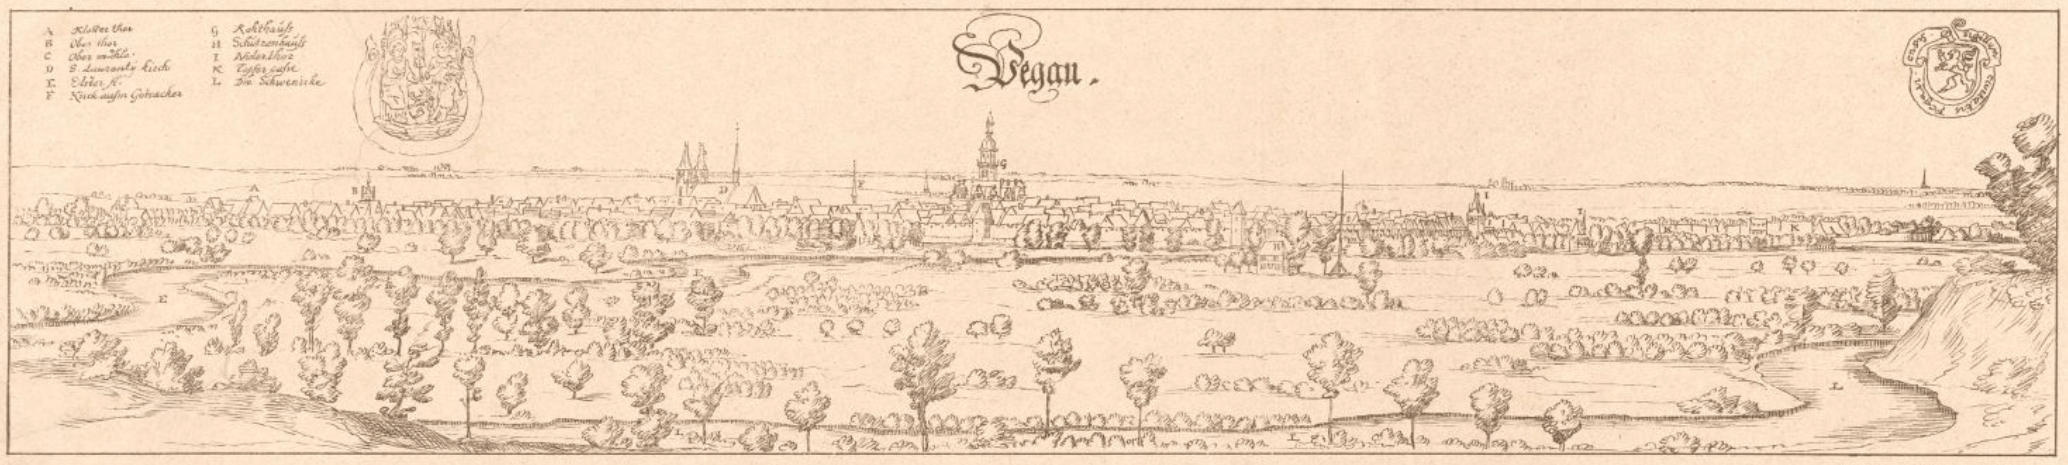 Ansicht von Pegau nach Dillich 1628